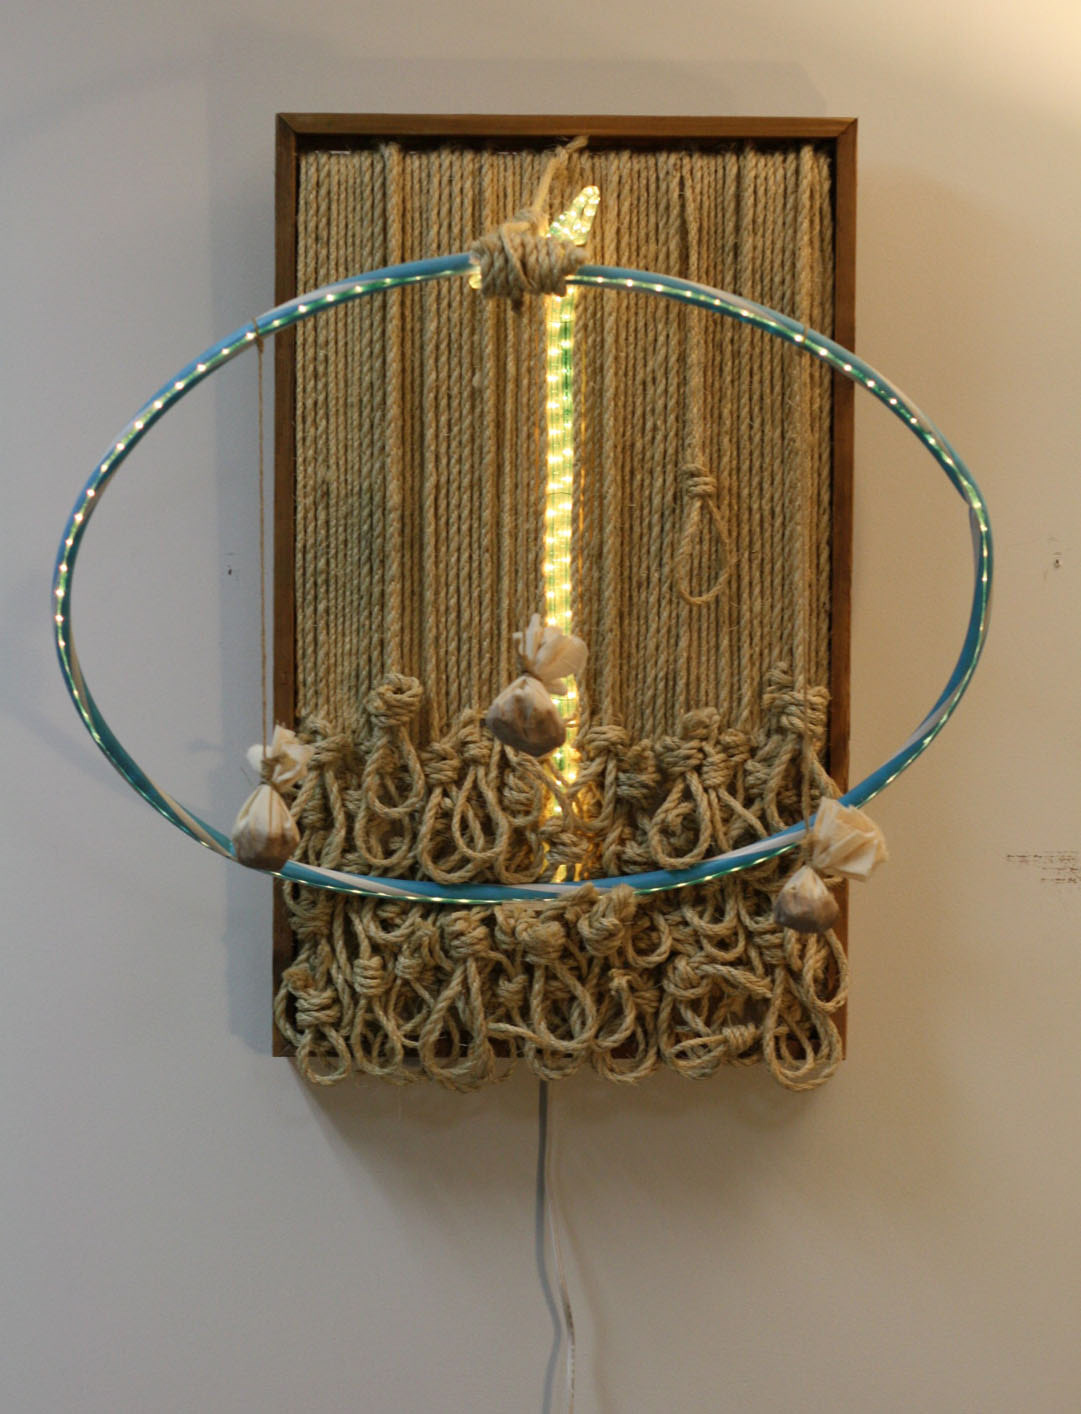 sculpture 3D mixed media rope noose